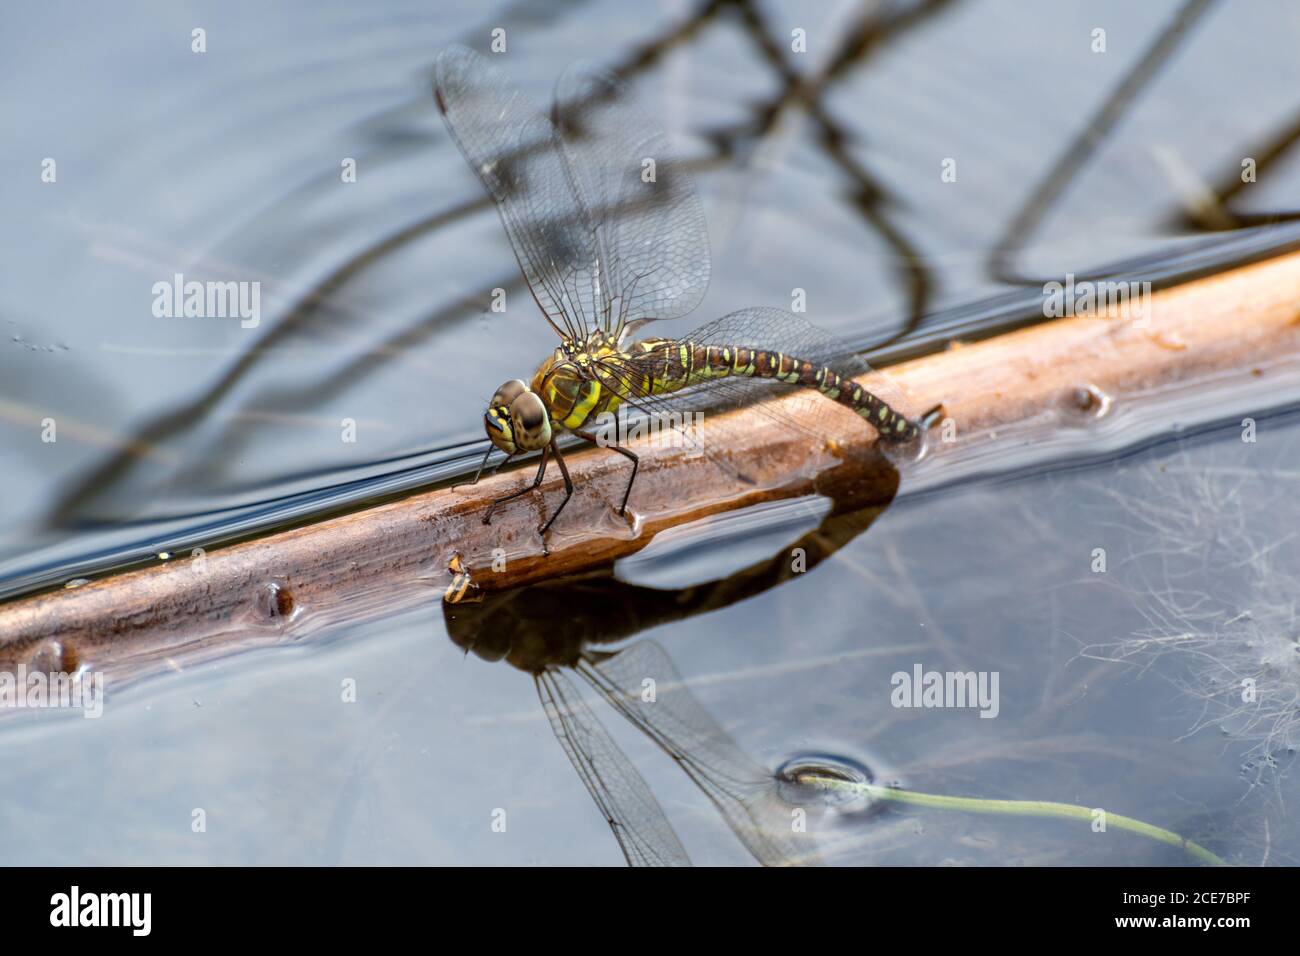 Mujer ambulante migrante libélula (Aeshna mixta) ovipositing en un estanque, Reino Unido Foto de stock